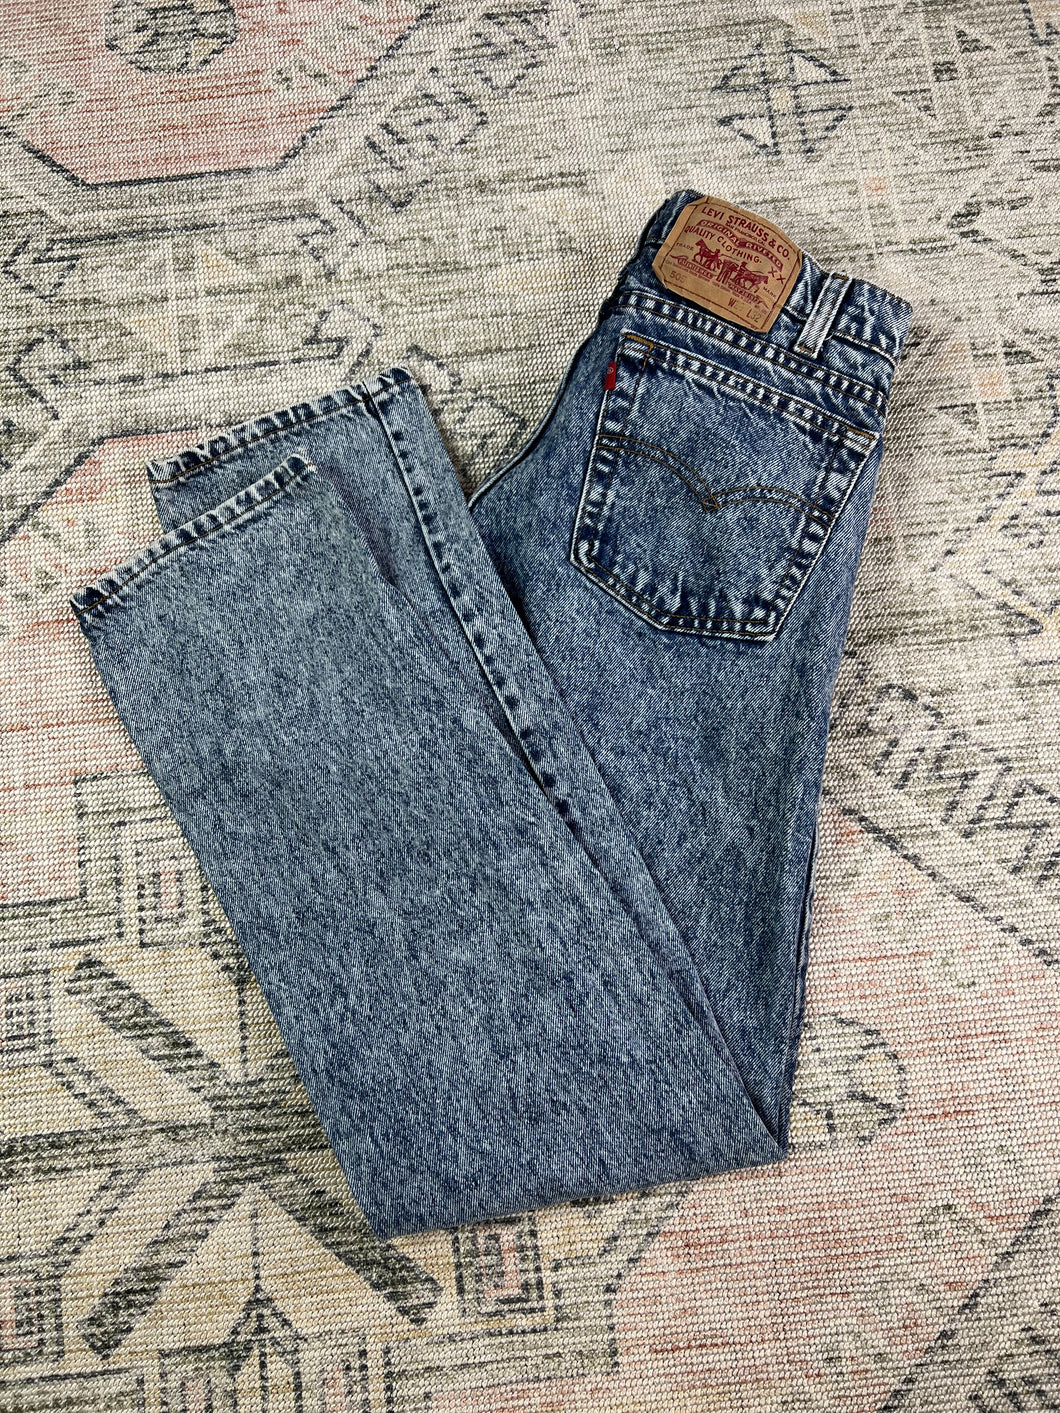 Vintage Levi’s Stonewash 505 Jeans (29x31)